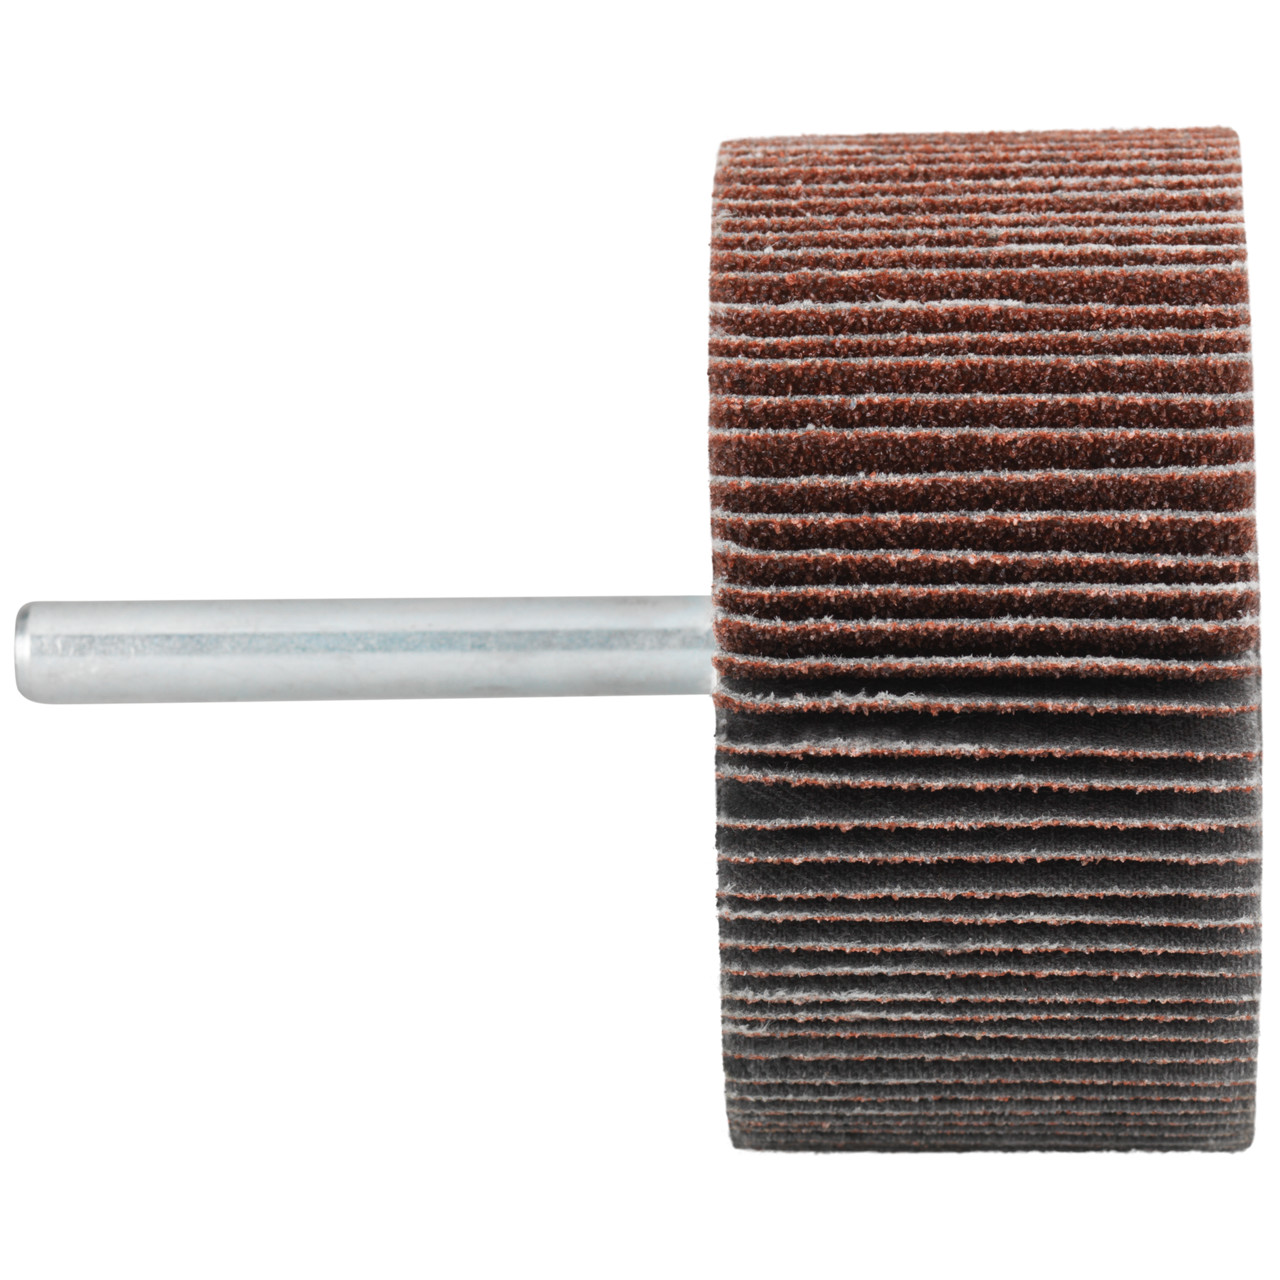 Tyrolit A-P01 C X Pennen DxD 60x20 Voor staal, roestvast staal en non-ferrometalen, P120, vorm: 52LA, Art. 816955